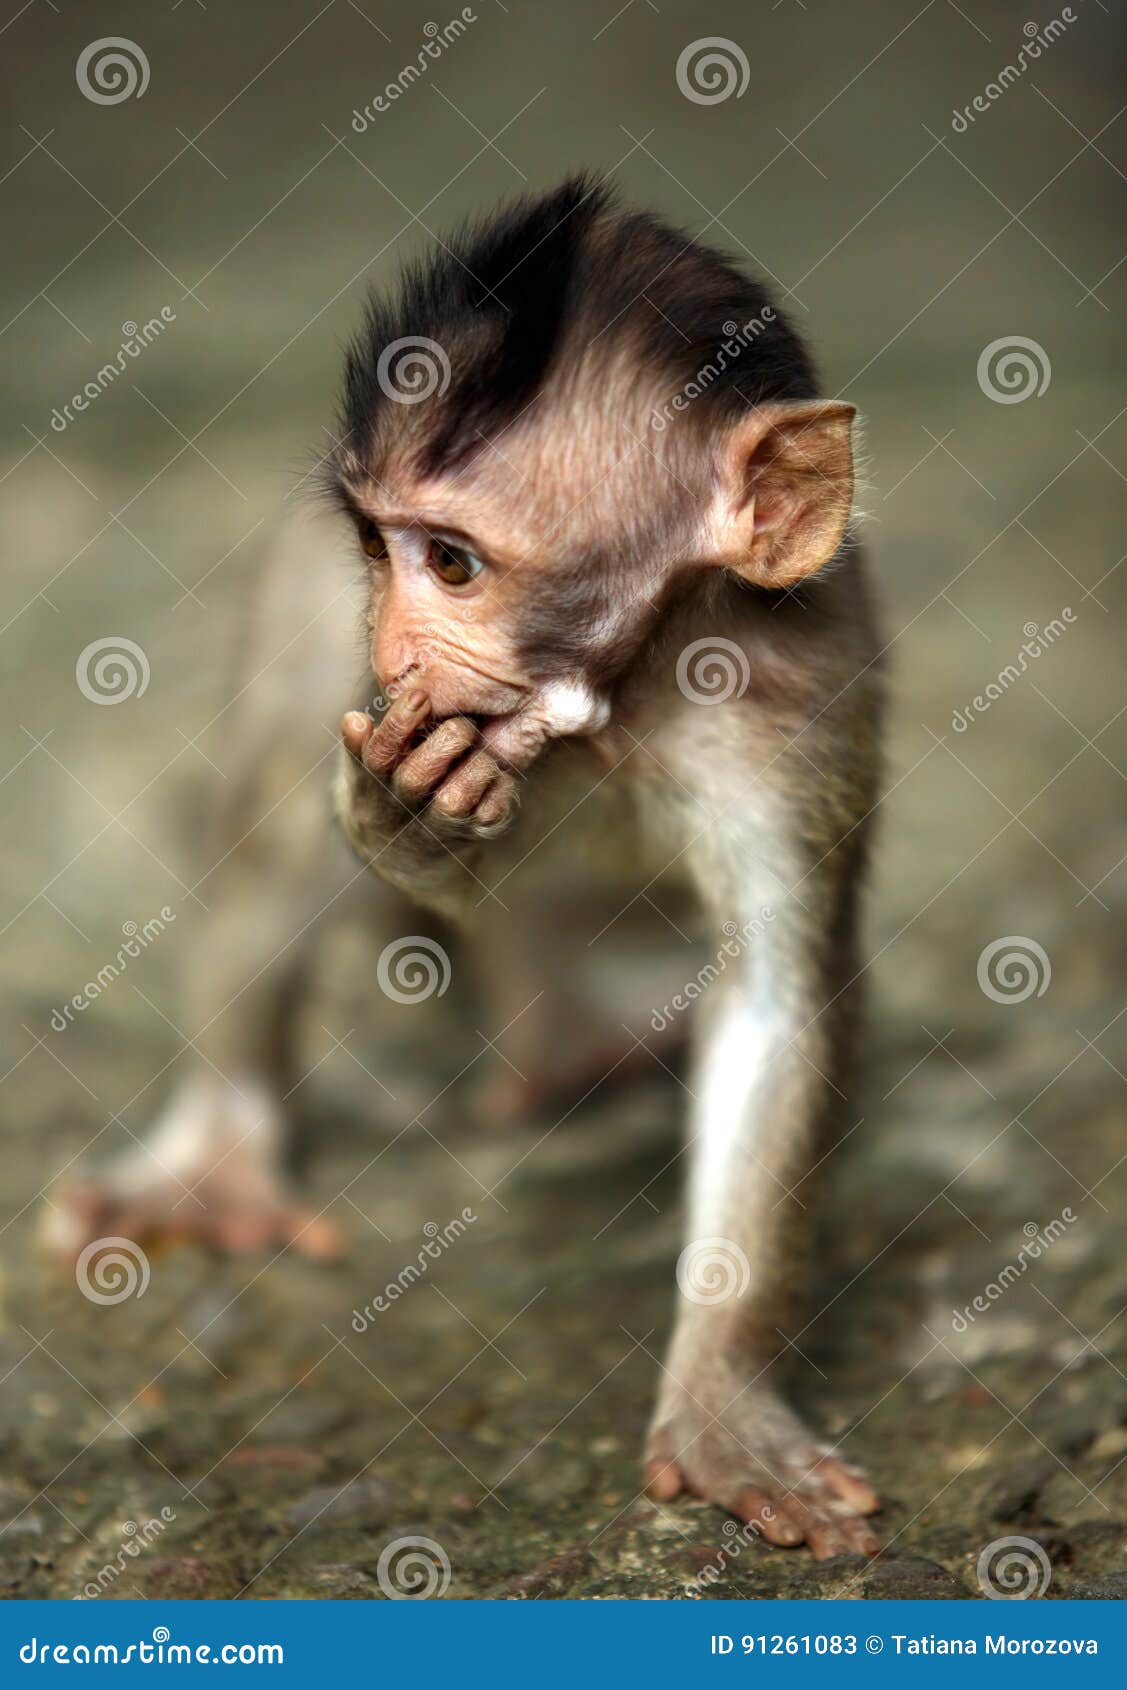 Niño de monos imagen de archivo. Imagen de cara, -